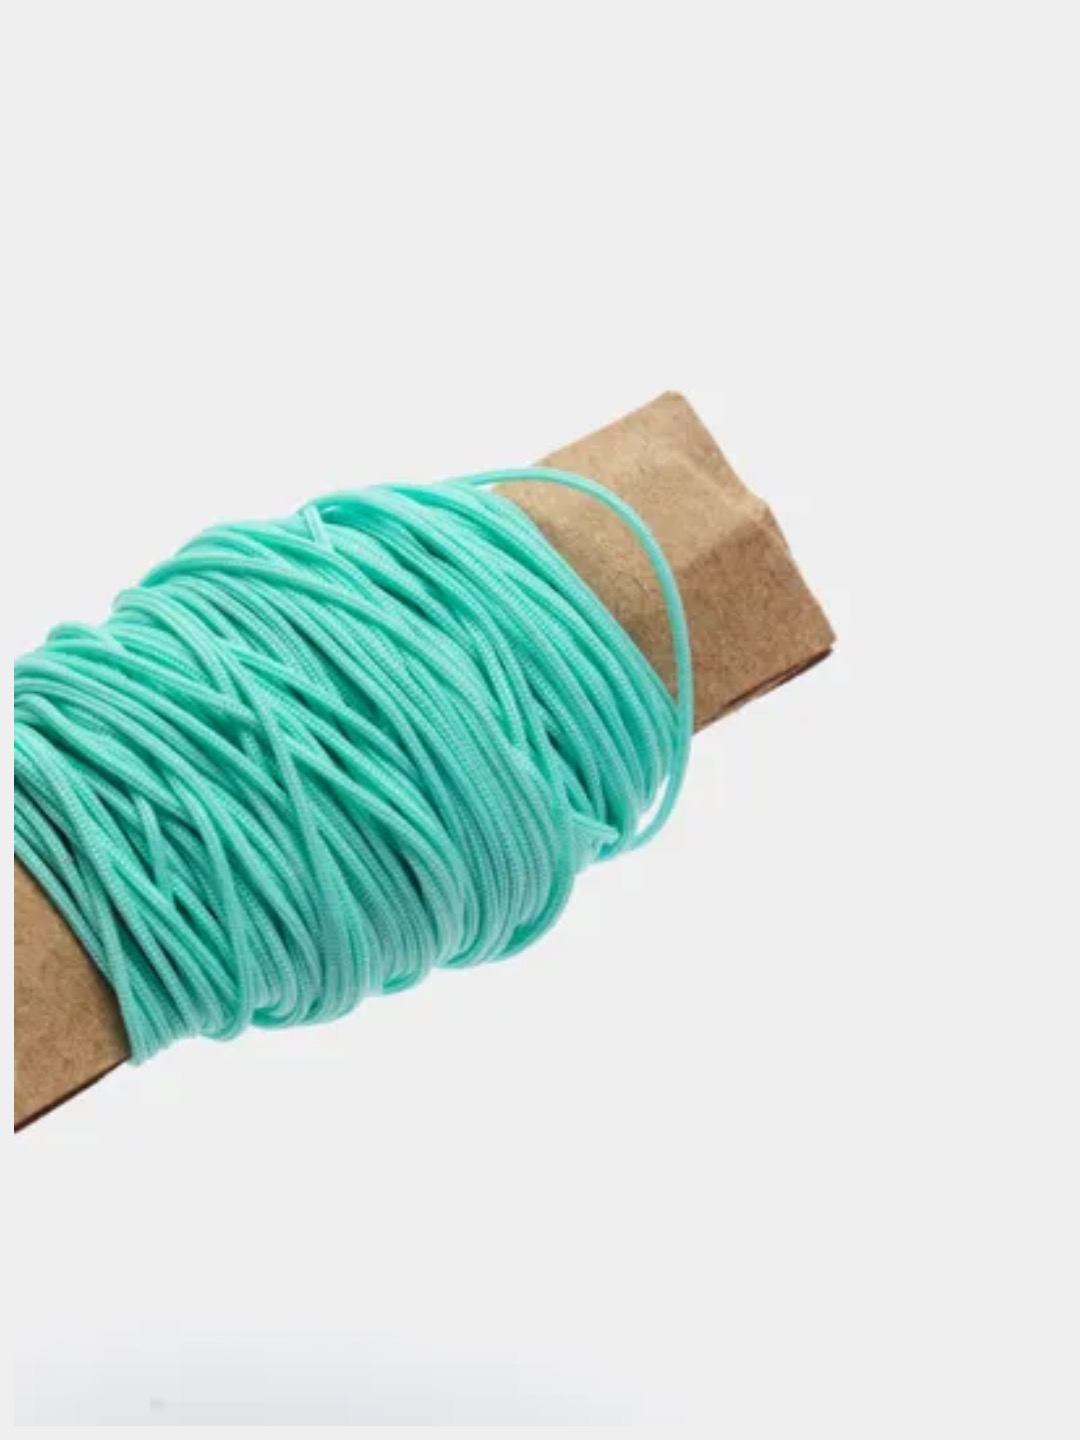  нейлоновый для плетения браслетов шамбала 10 метров, макраме, нить .